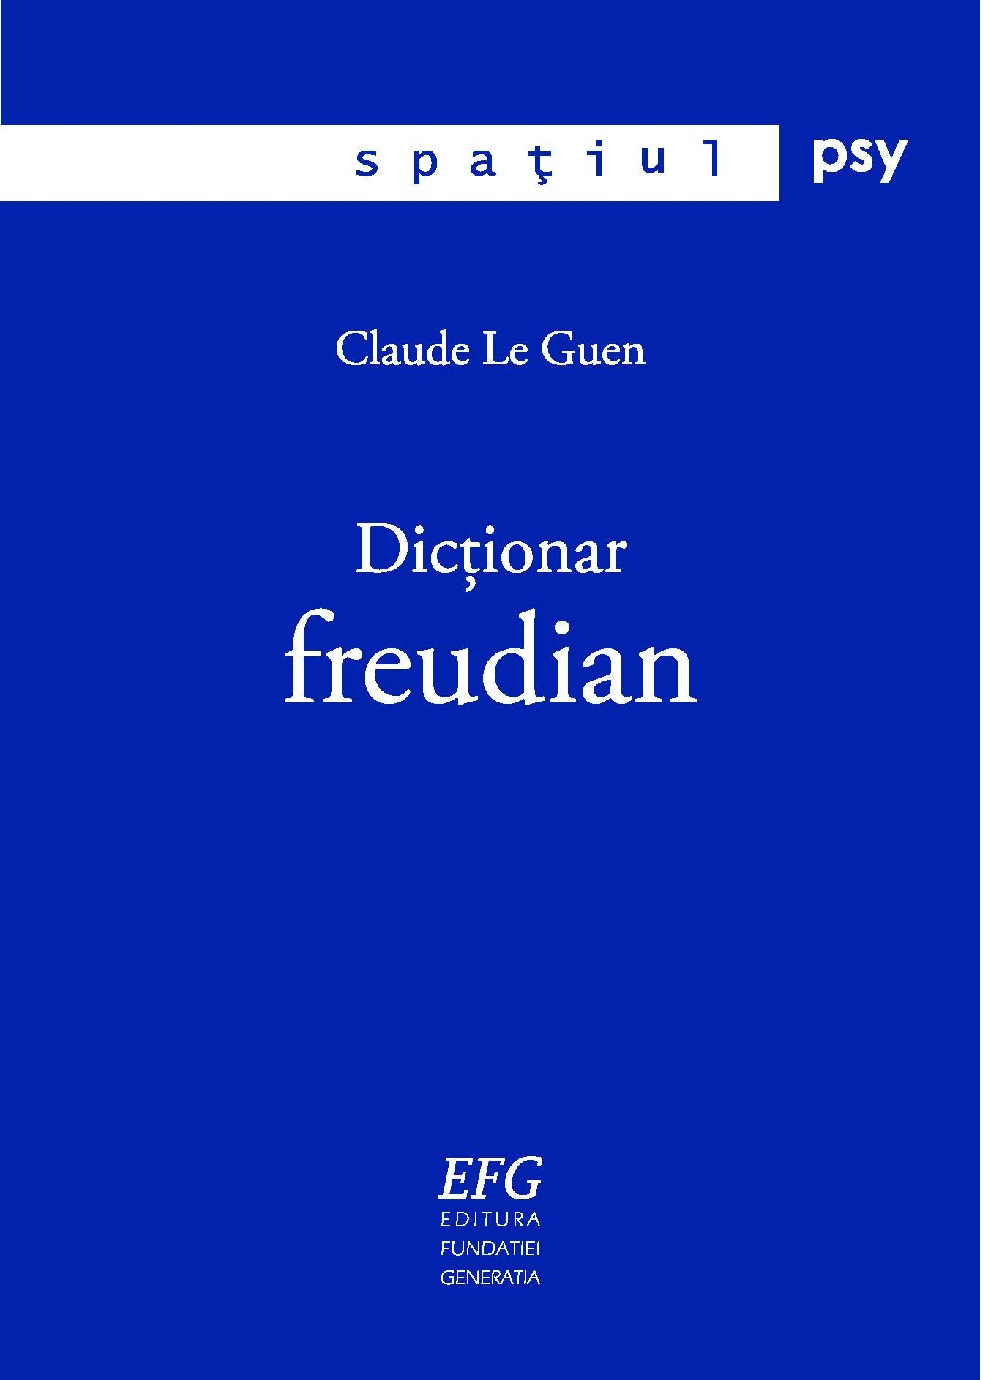 Dictionar freudian | Claude Le Guen carturesti 2022